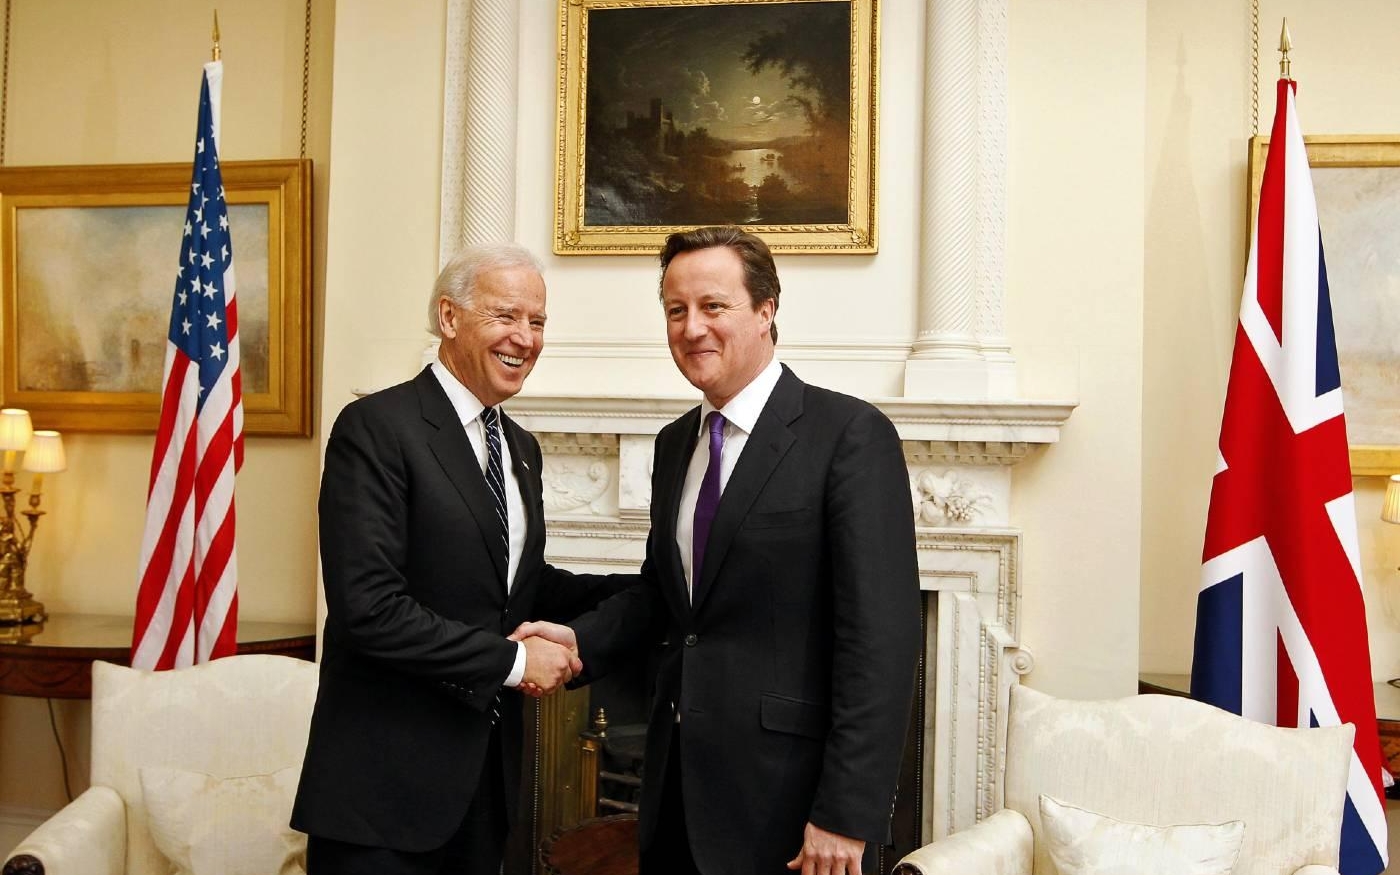 Joe Biden, alors vice-président des États-Unis, rencontre le Premier ministre britannique de l’époque David Cameron à Downing Street en février 2013 (AFP)